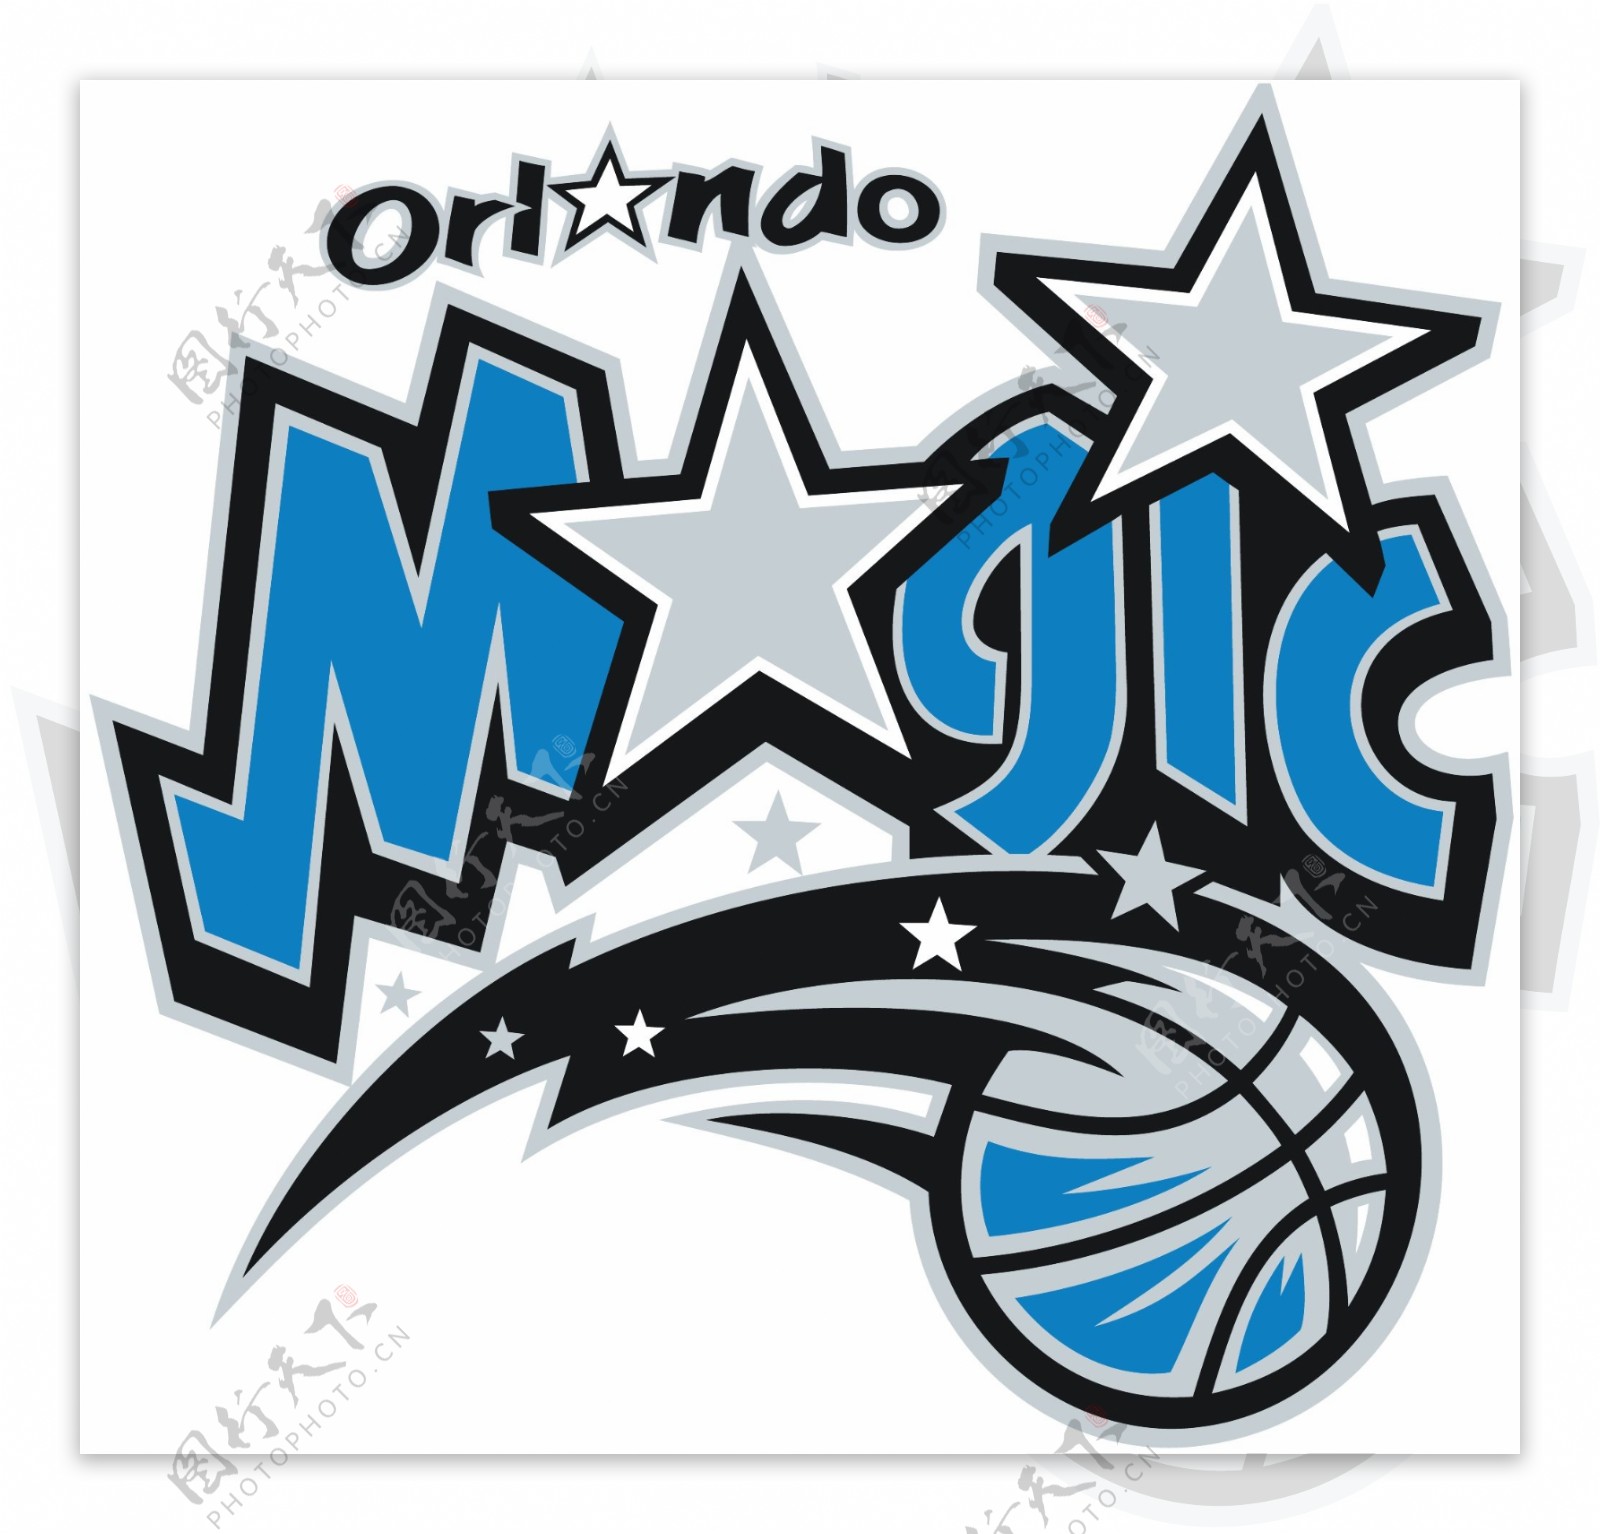 奥兰多魔术队NBA篮球俱乐部